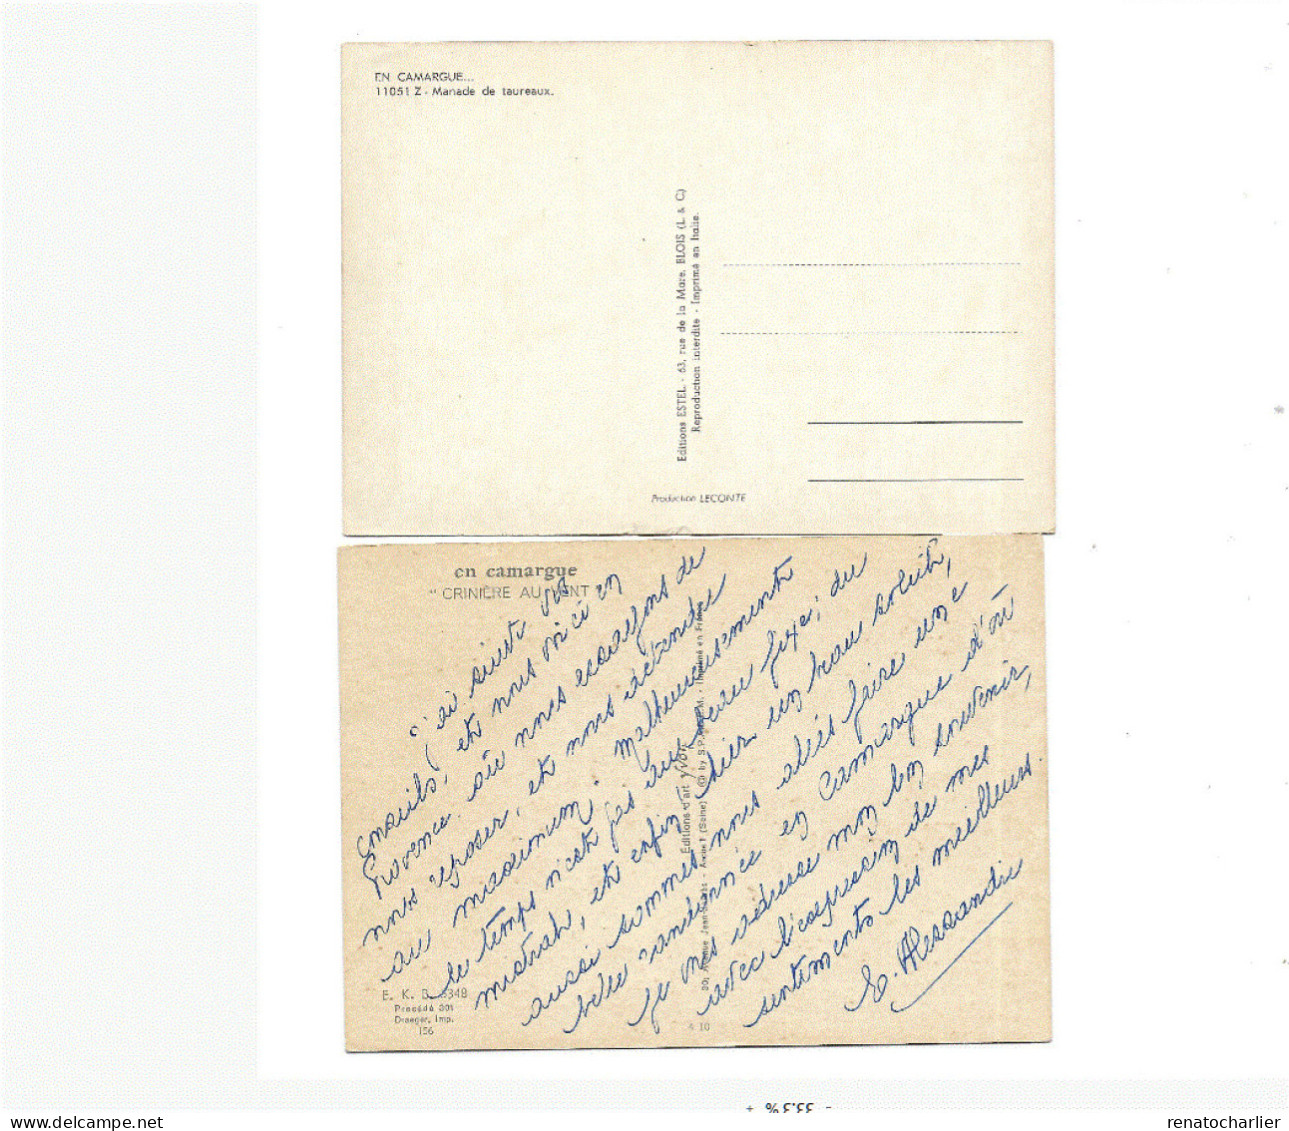 Lot de 8 Cartes postales "Animaux".Ecrites en 1917,1971,1980 et non écrites.